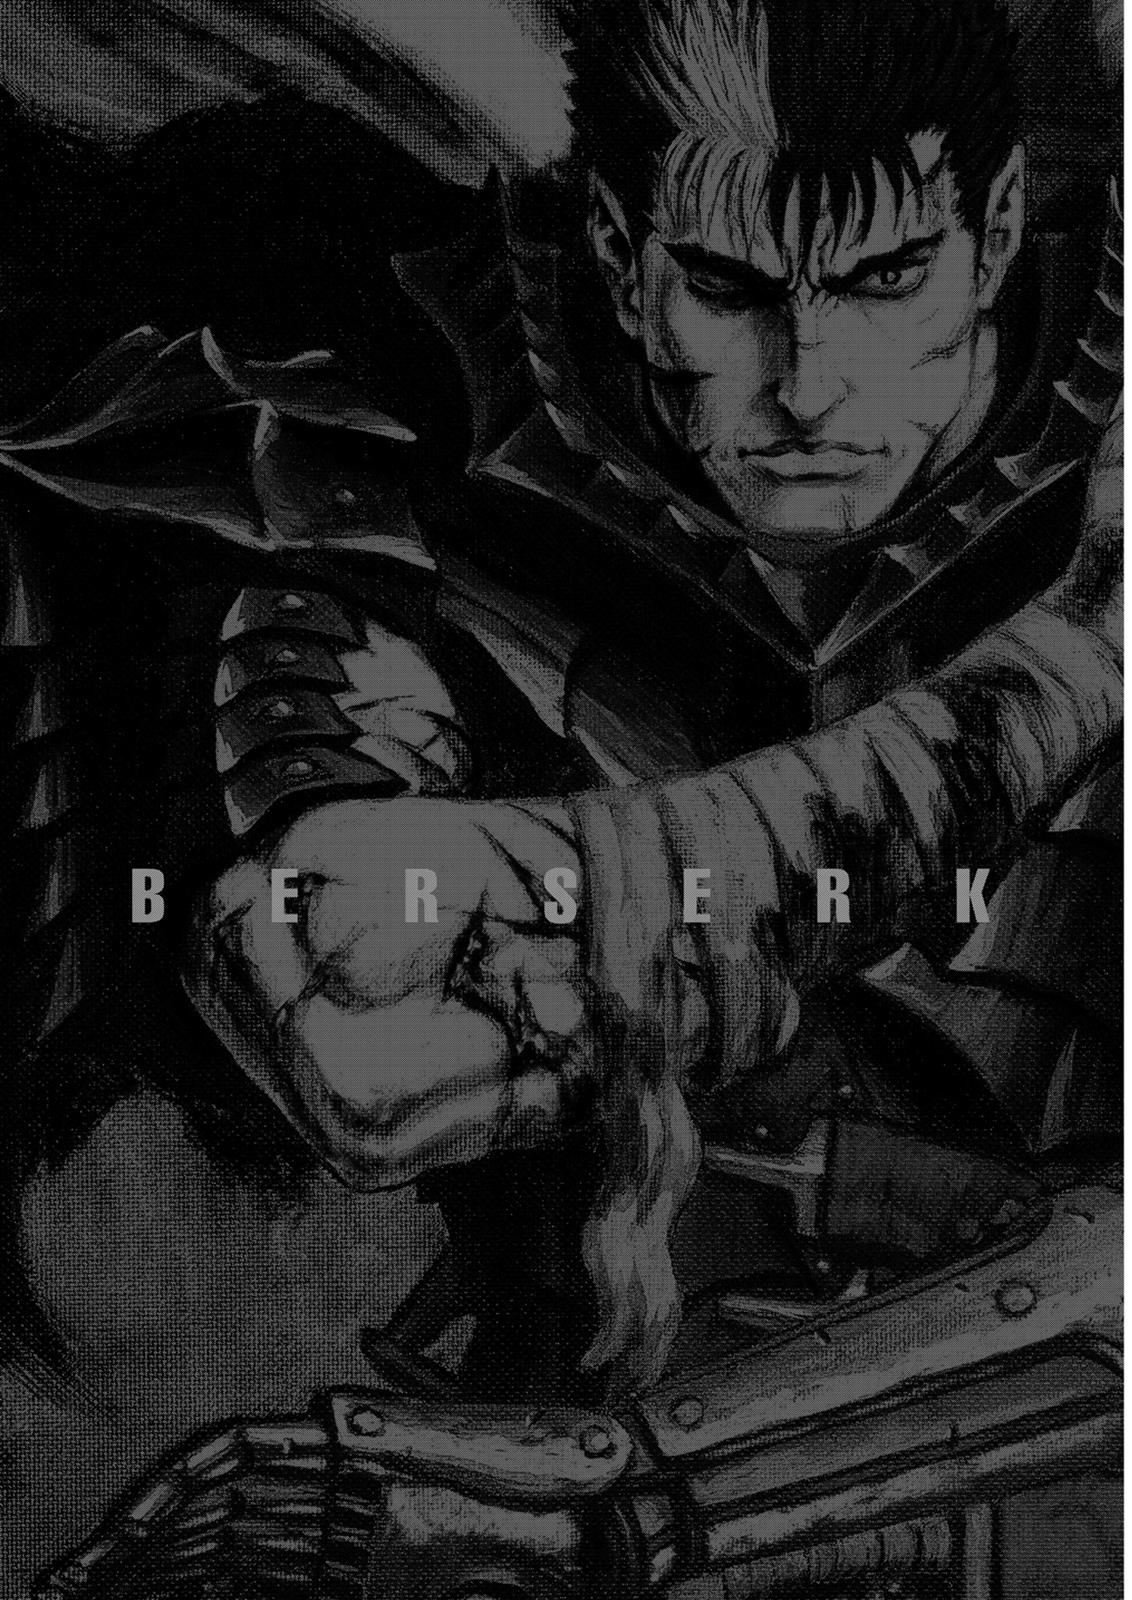 Berserk Manga Chapter 314 image 21